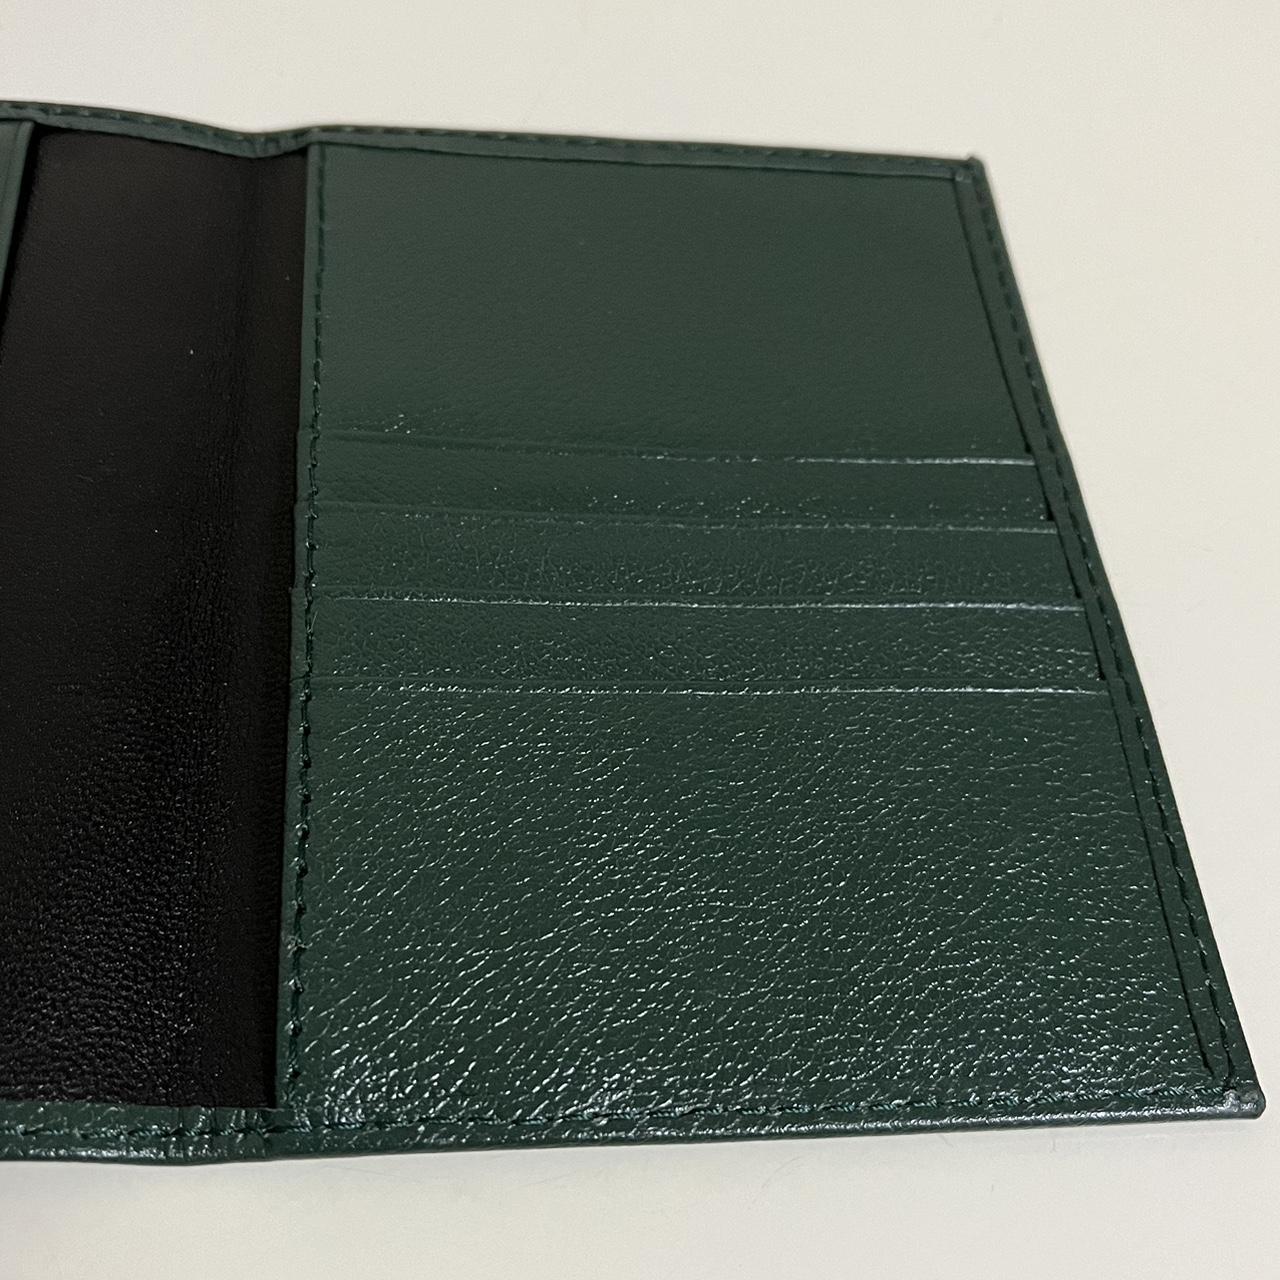 Product Image 3 - Rolex Passport Case Cardholder

Super rare